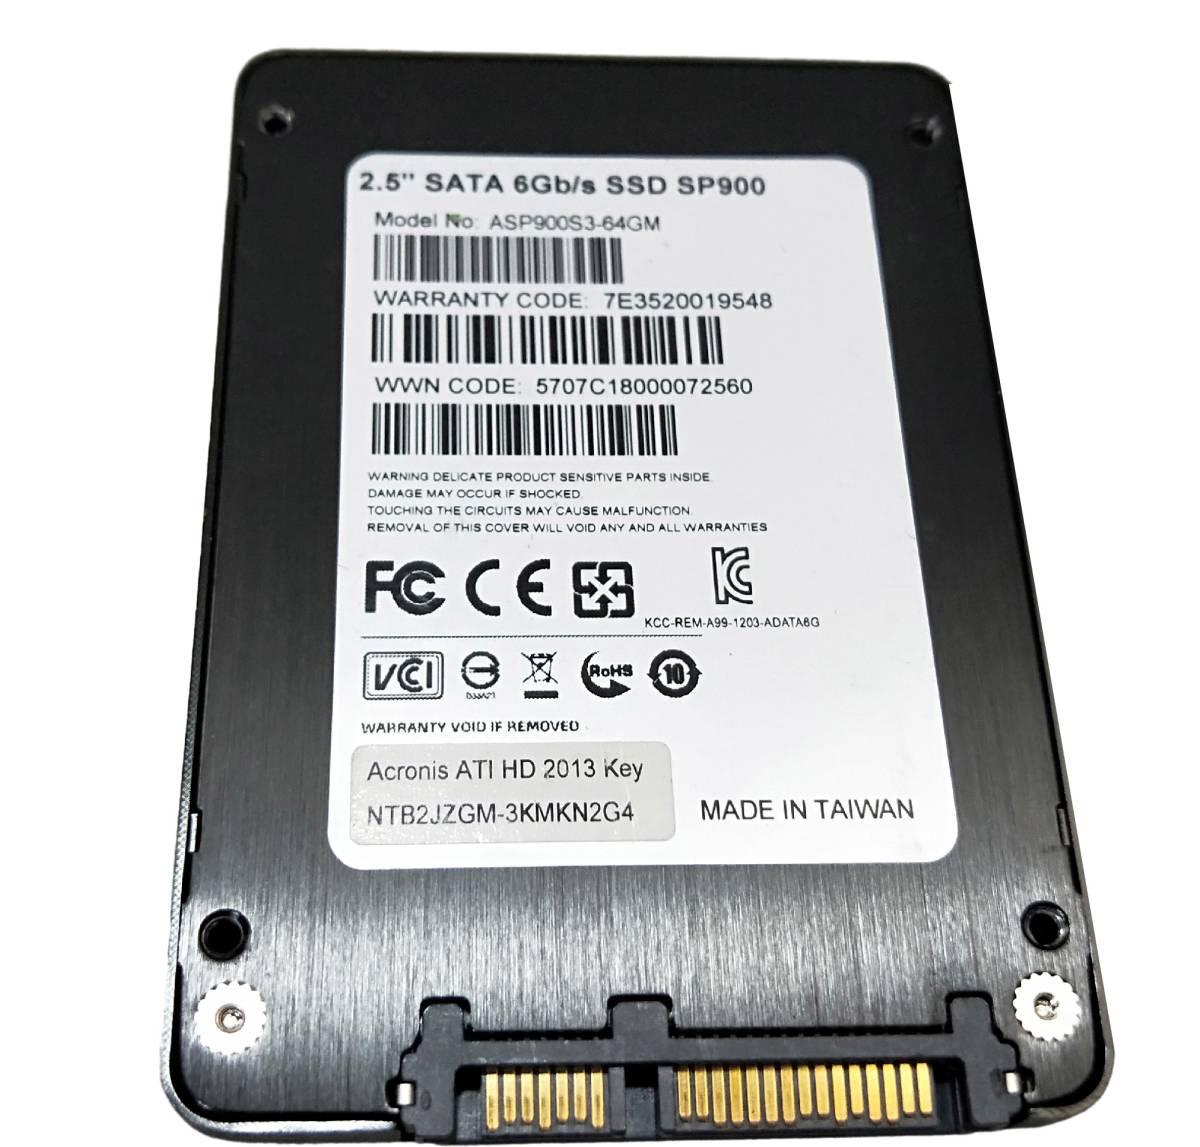 [ б/у детали ]2.5 SATA SSD 1 шт. обычный ADATA SP900 64GB #SSD02463